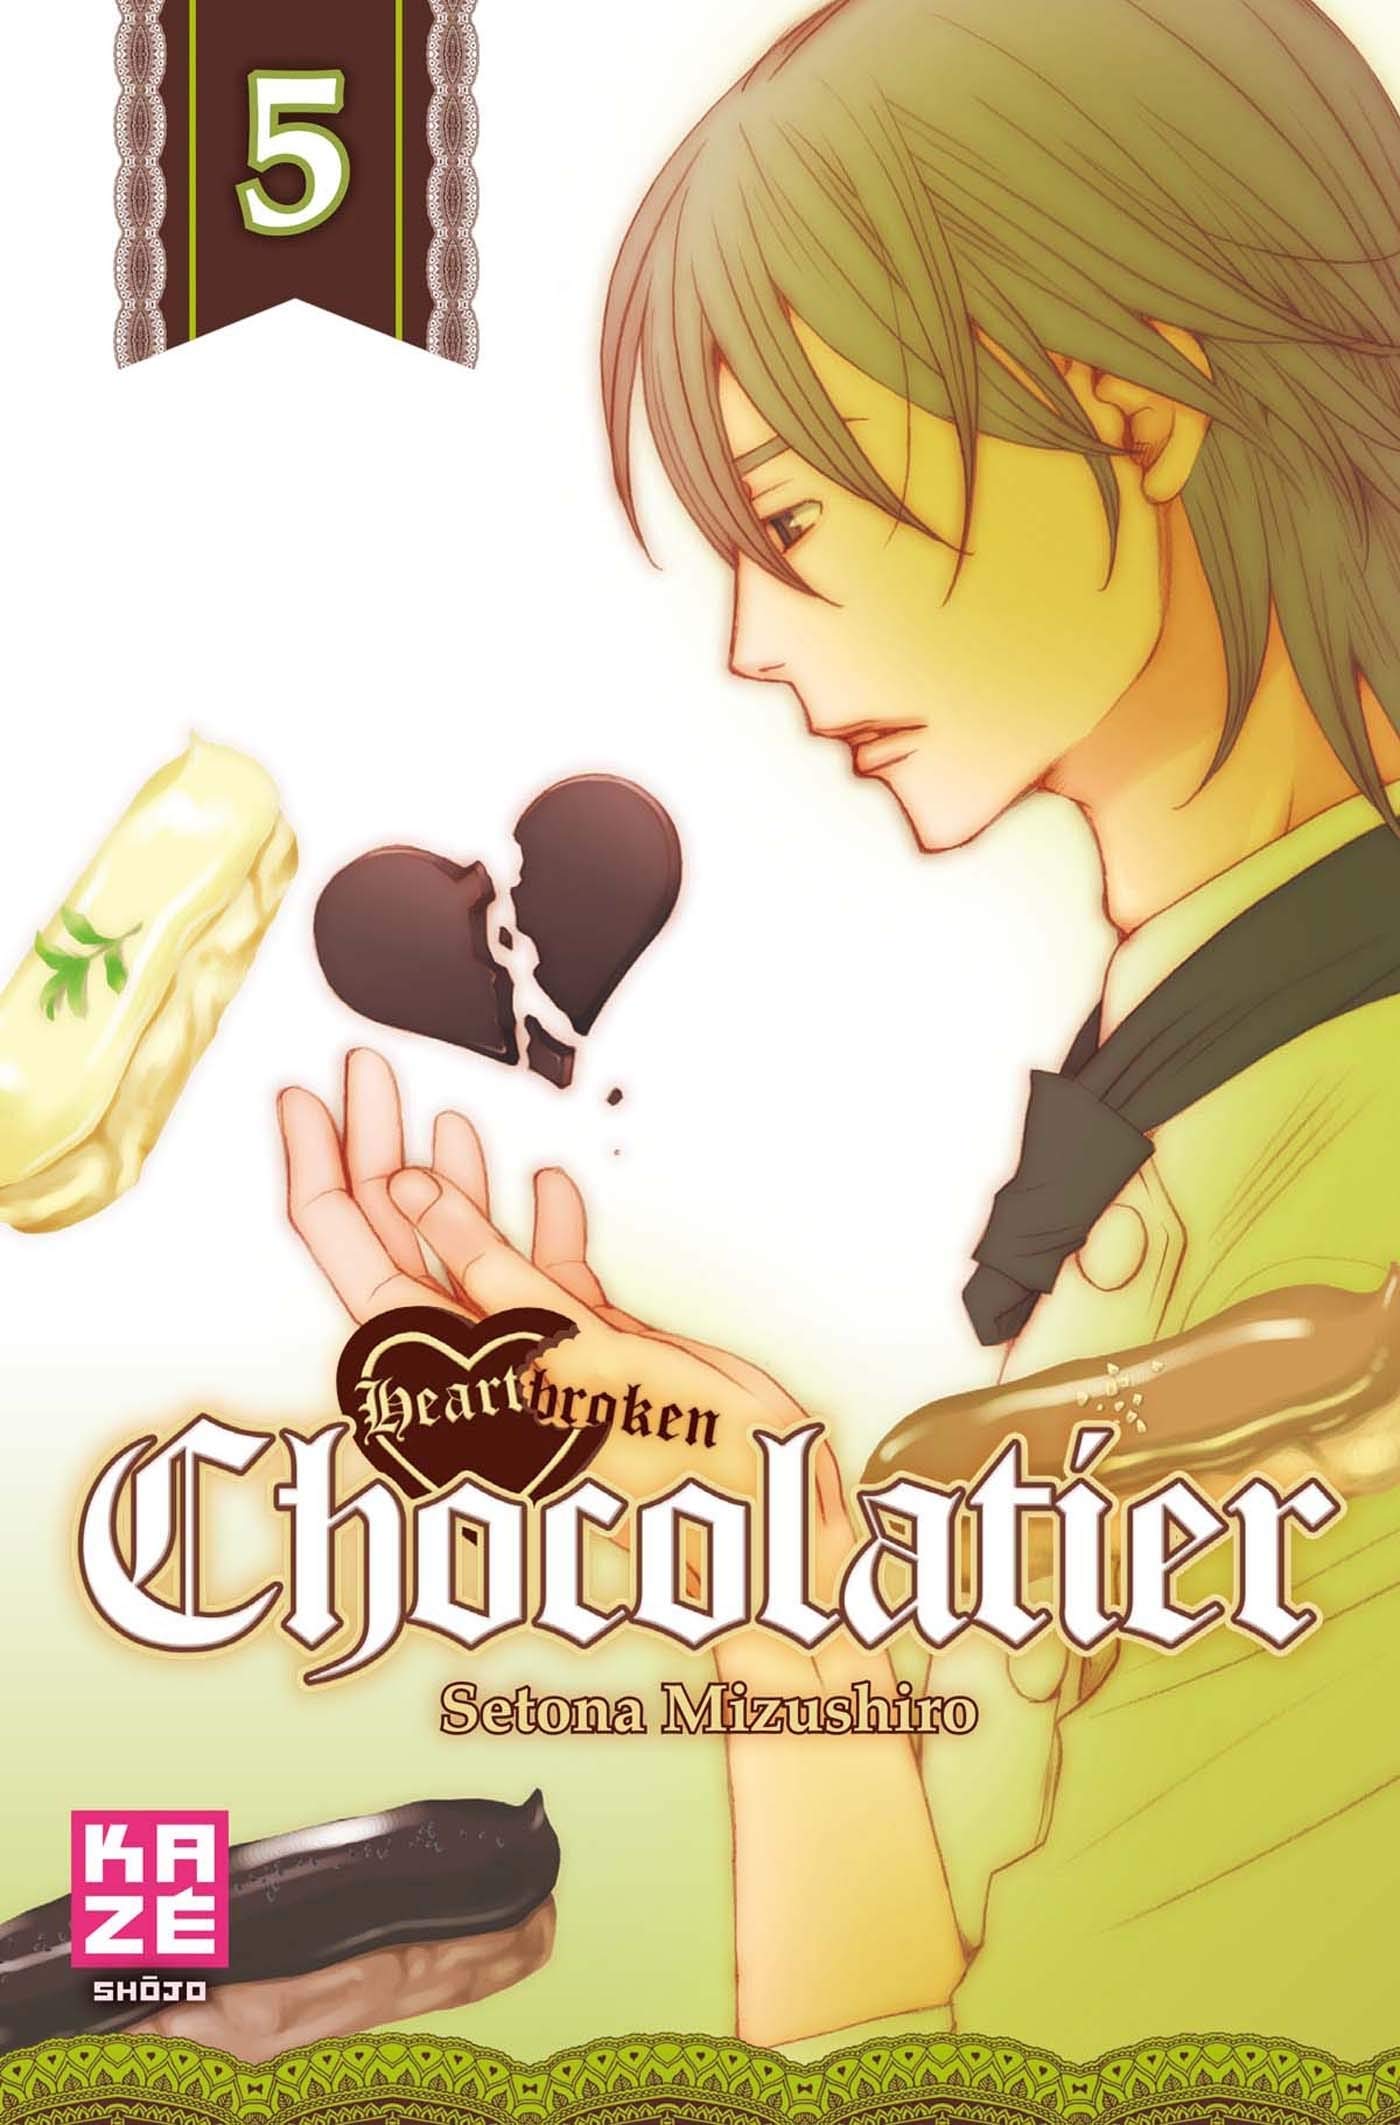 heartbrokenchocolatier5